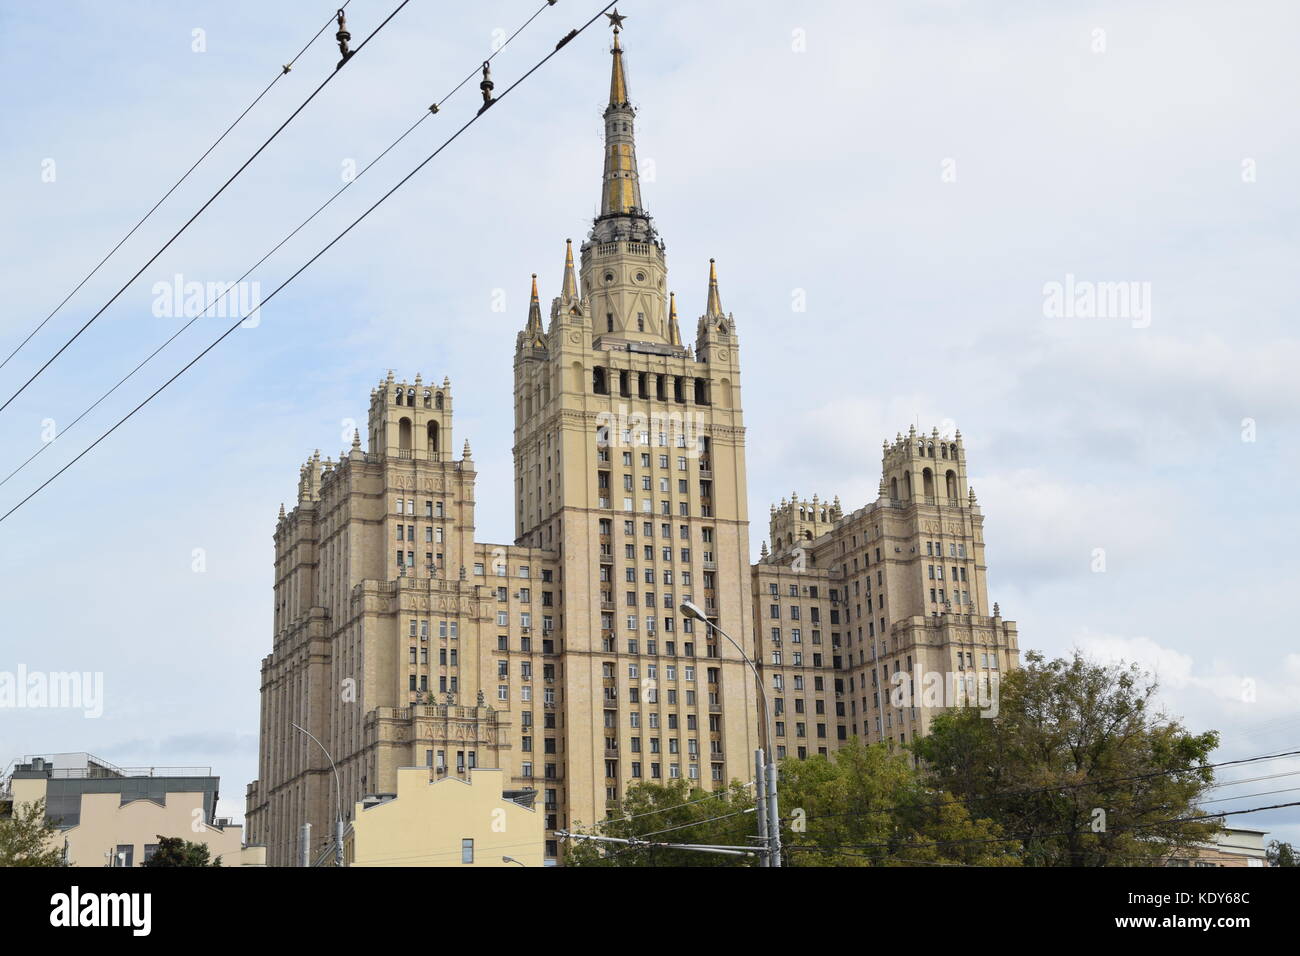 Kudrinskaya quadratisches Gebäude ist eines von sieben stalinistischen Wolkenkratzer, entworfen von Mikhail posokhin und ashot mndoyants. - Sieben Schwestern - wohlhabend, stilvoll Stockfoto